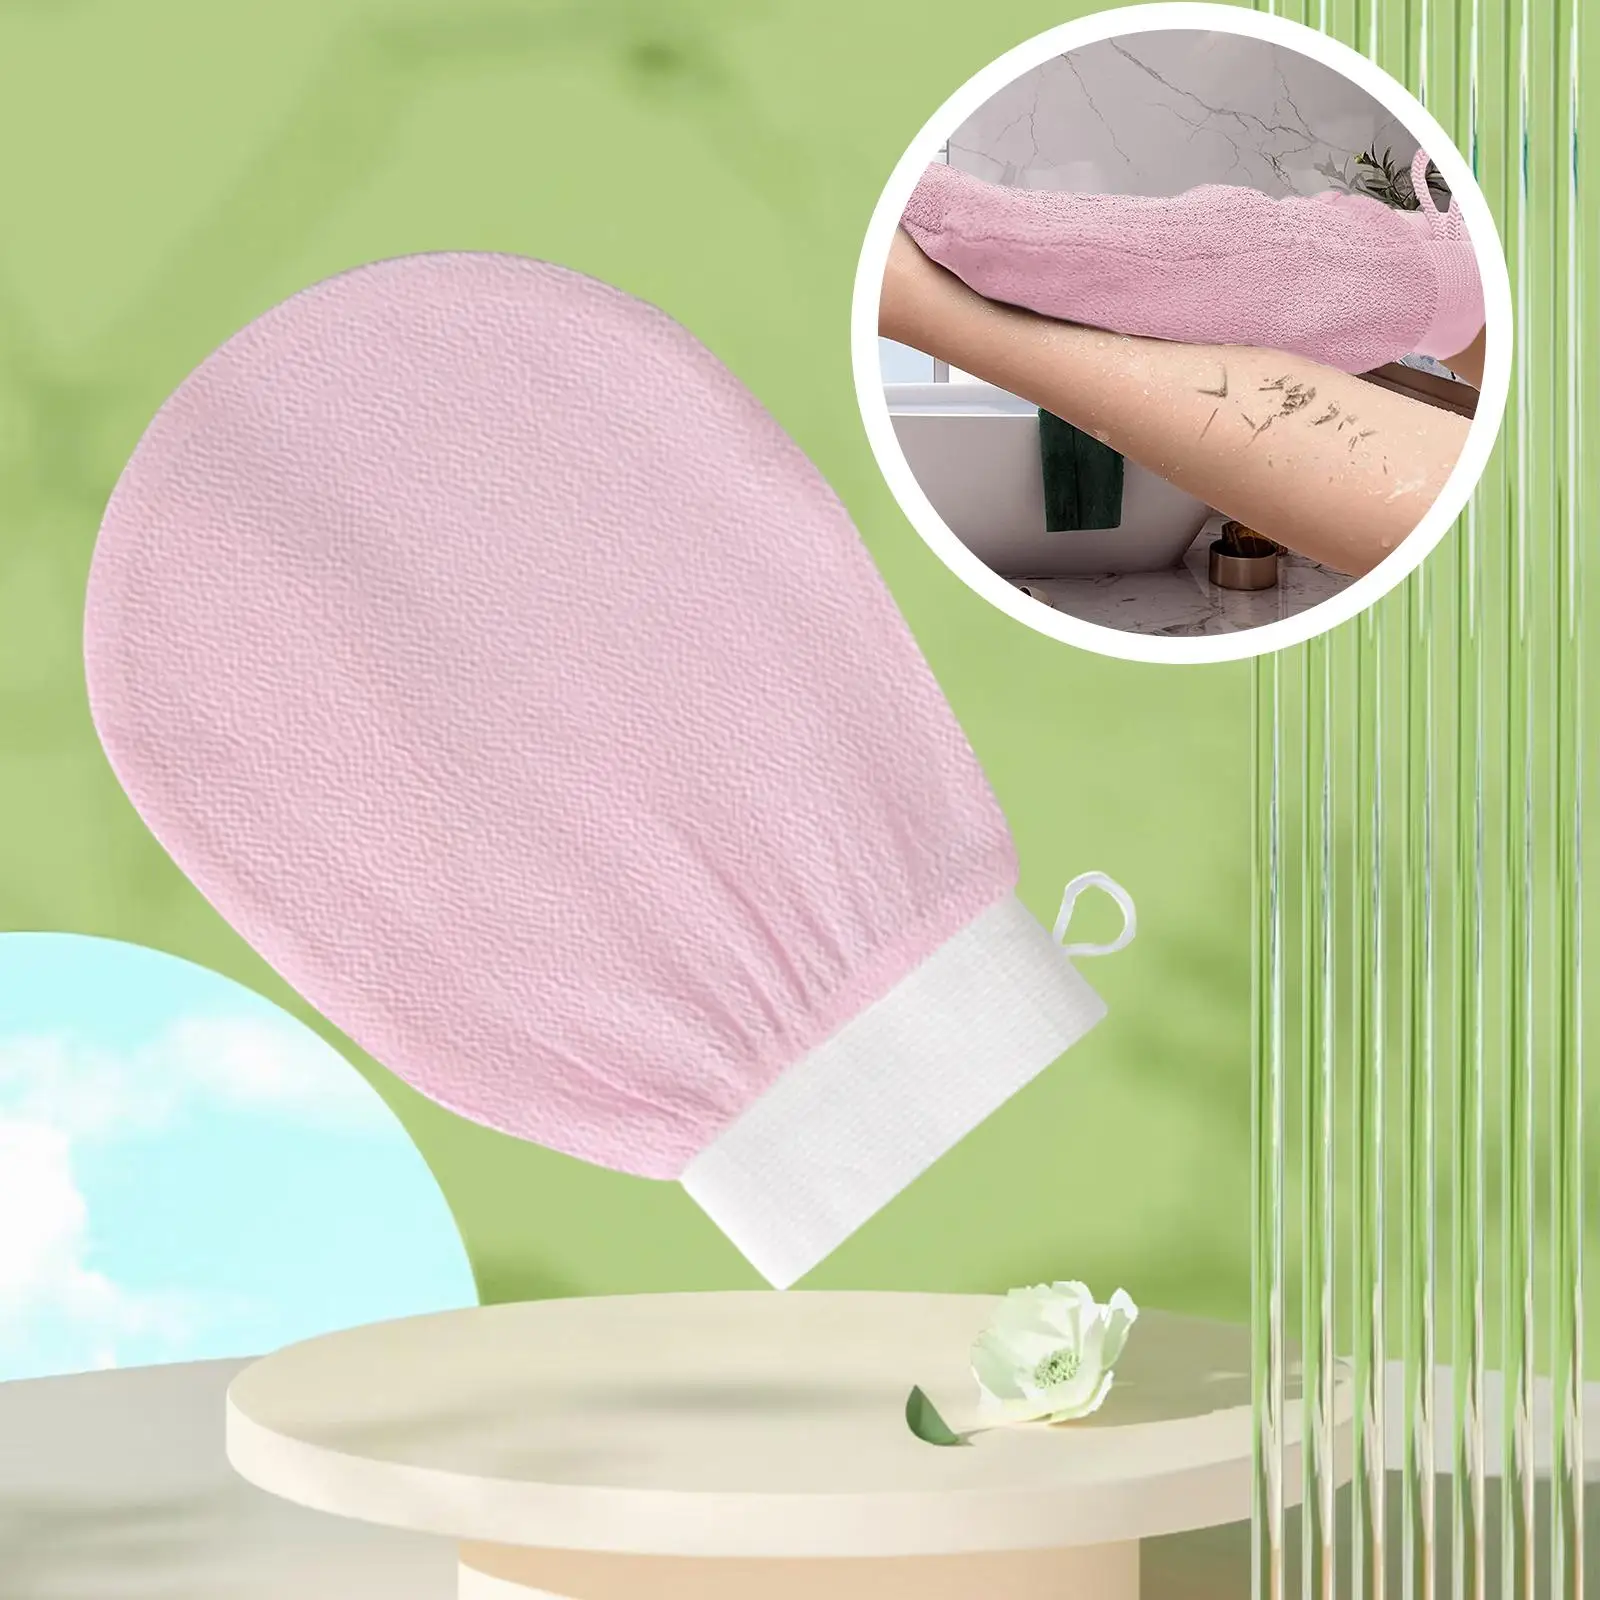 Bath Glove Scrubbing Gloves Skin Cleanser Shower Gloves for Bath Shower